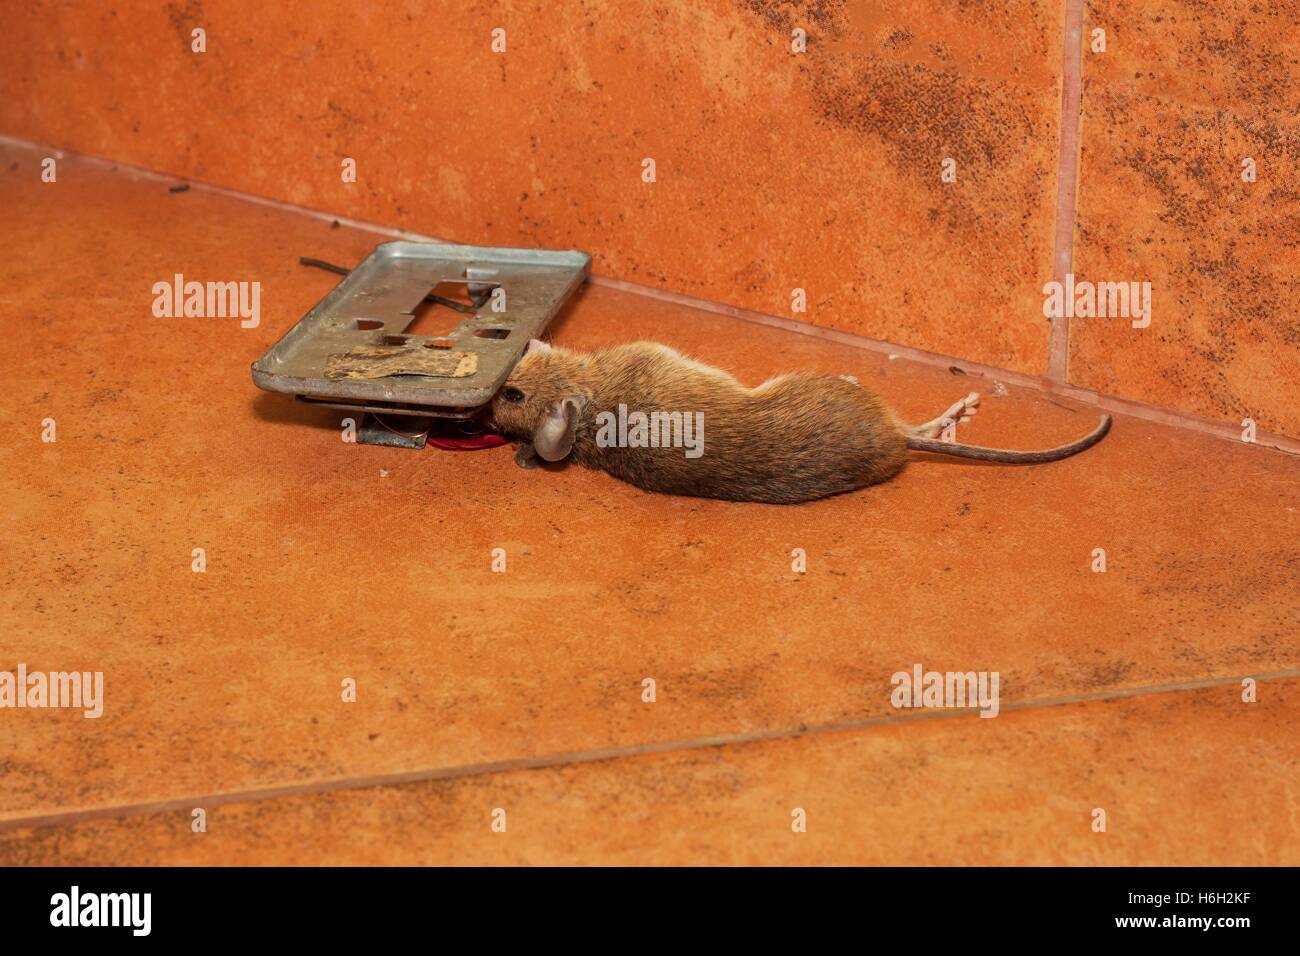 https://c8.alamy.com/compes/h6h2kf/raton-muerto-atrapados-en-trampas-en-el-pavimento-de-la-cocina-raton-pequeno-en-una-ratonera-raton-muerto-en-una-trampa-h6h2kf.jpg